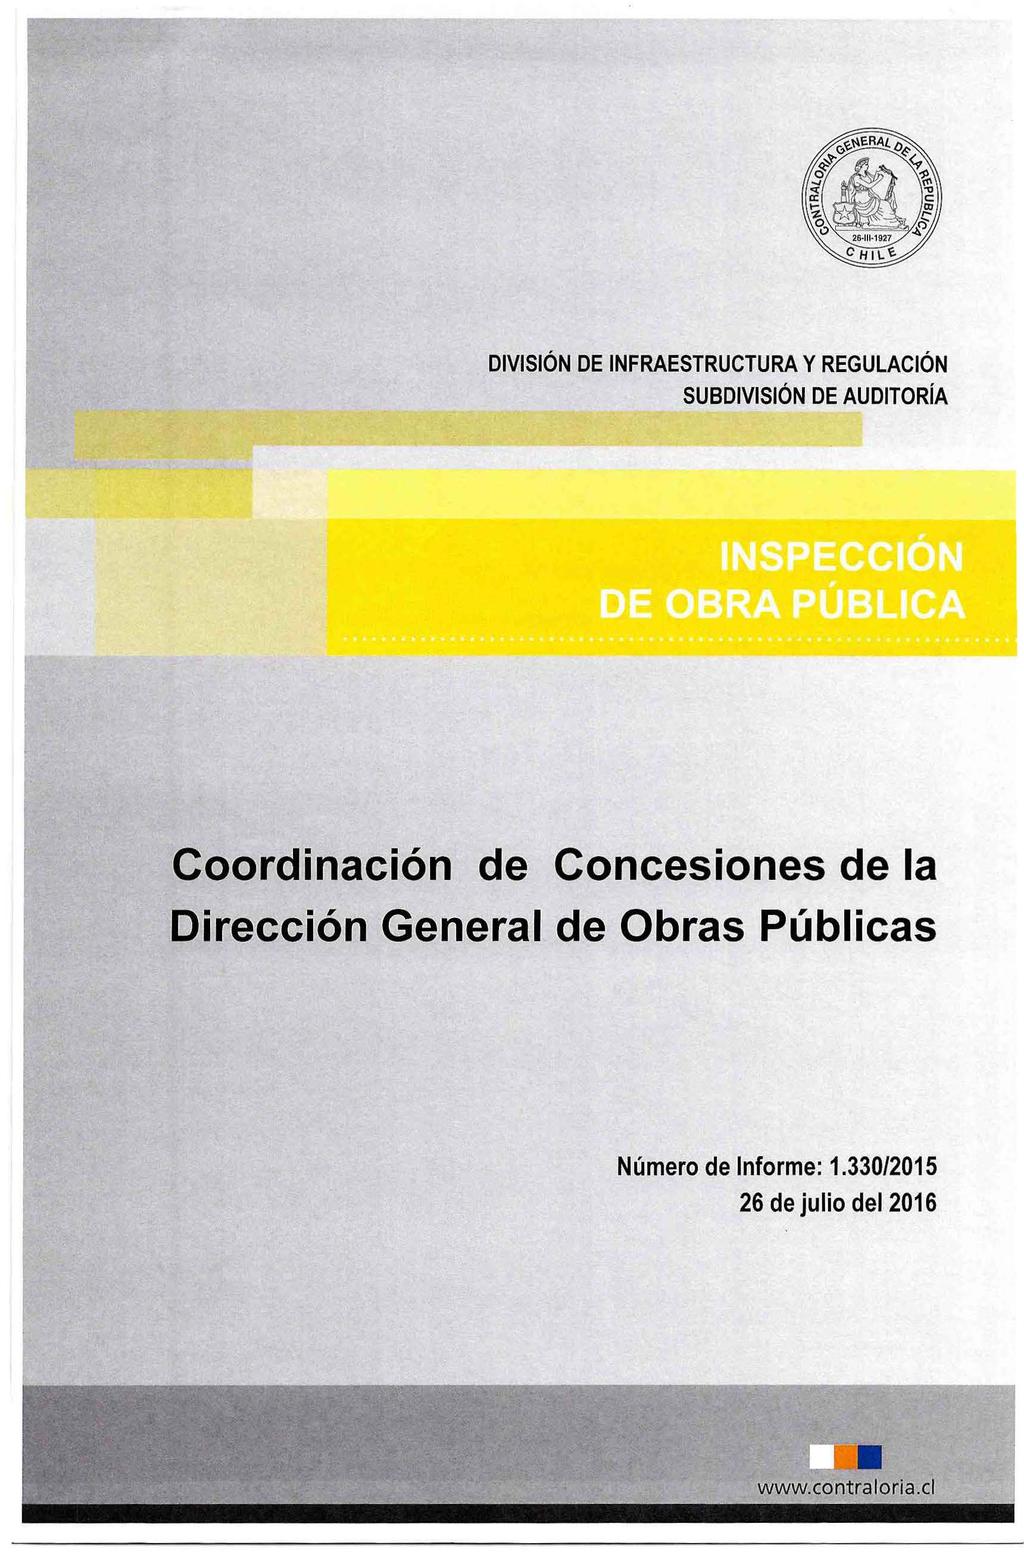 Coordinación de Concesiones de la Dirección General de